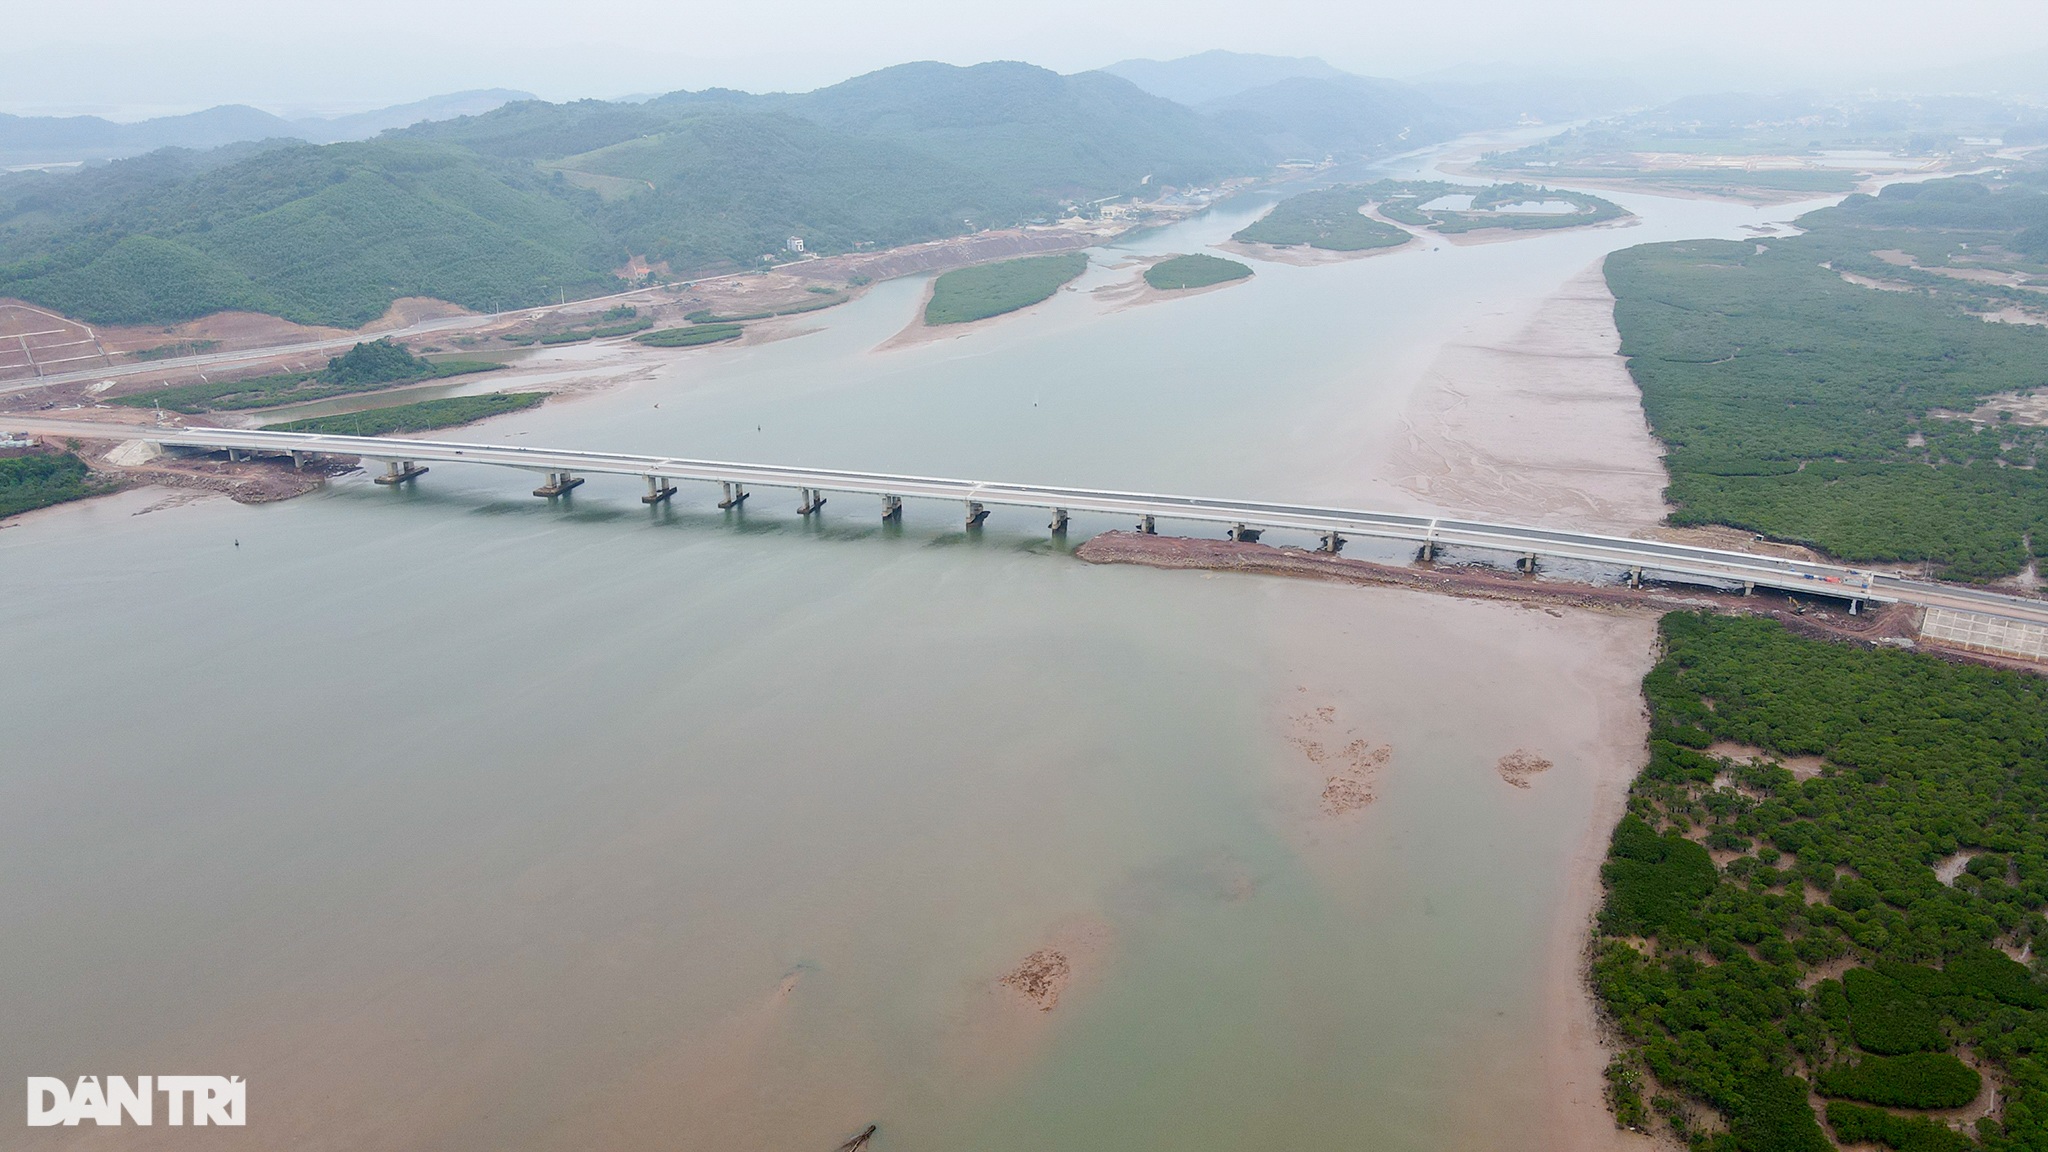 Chiêm ngưỡng cầu vượt biển 800 tỷ đồng dài nhất tỉnh Quảng Ninh - 11